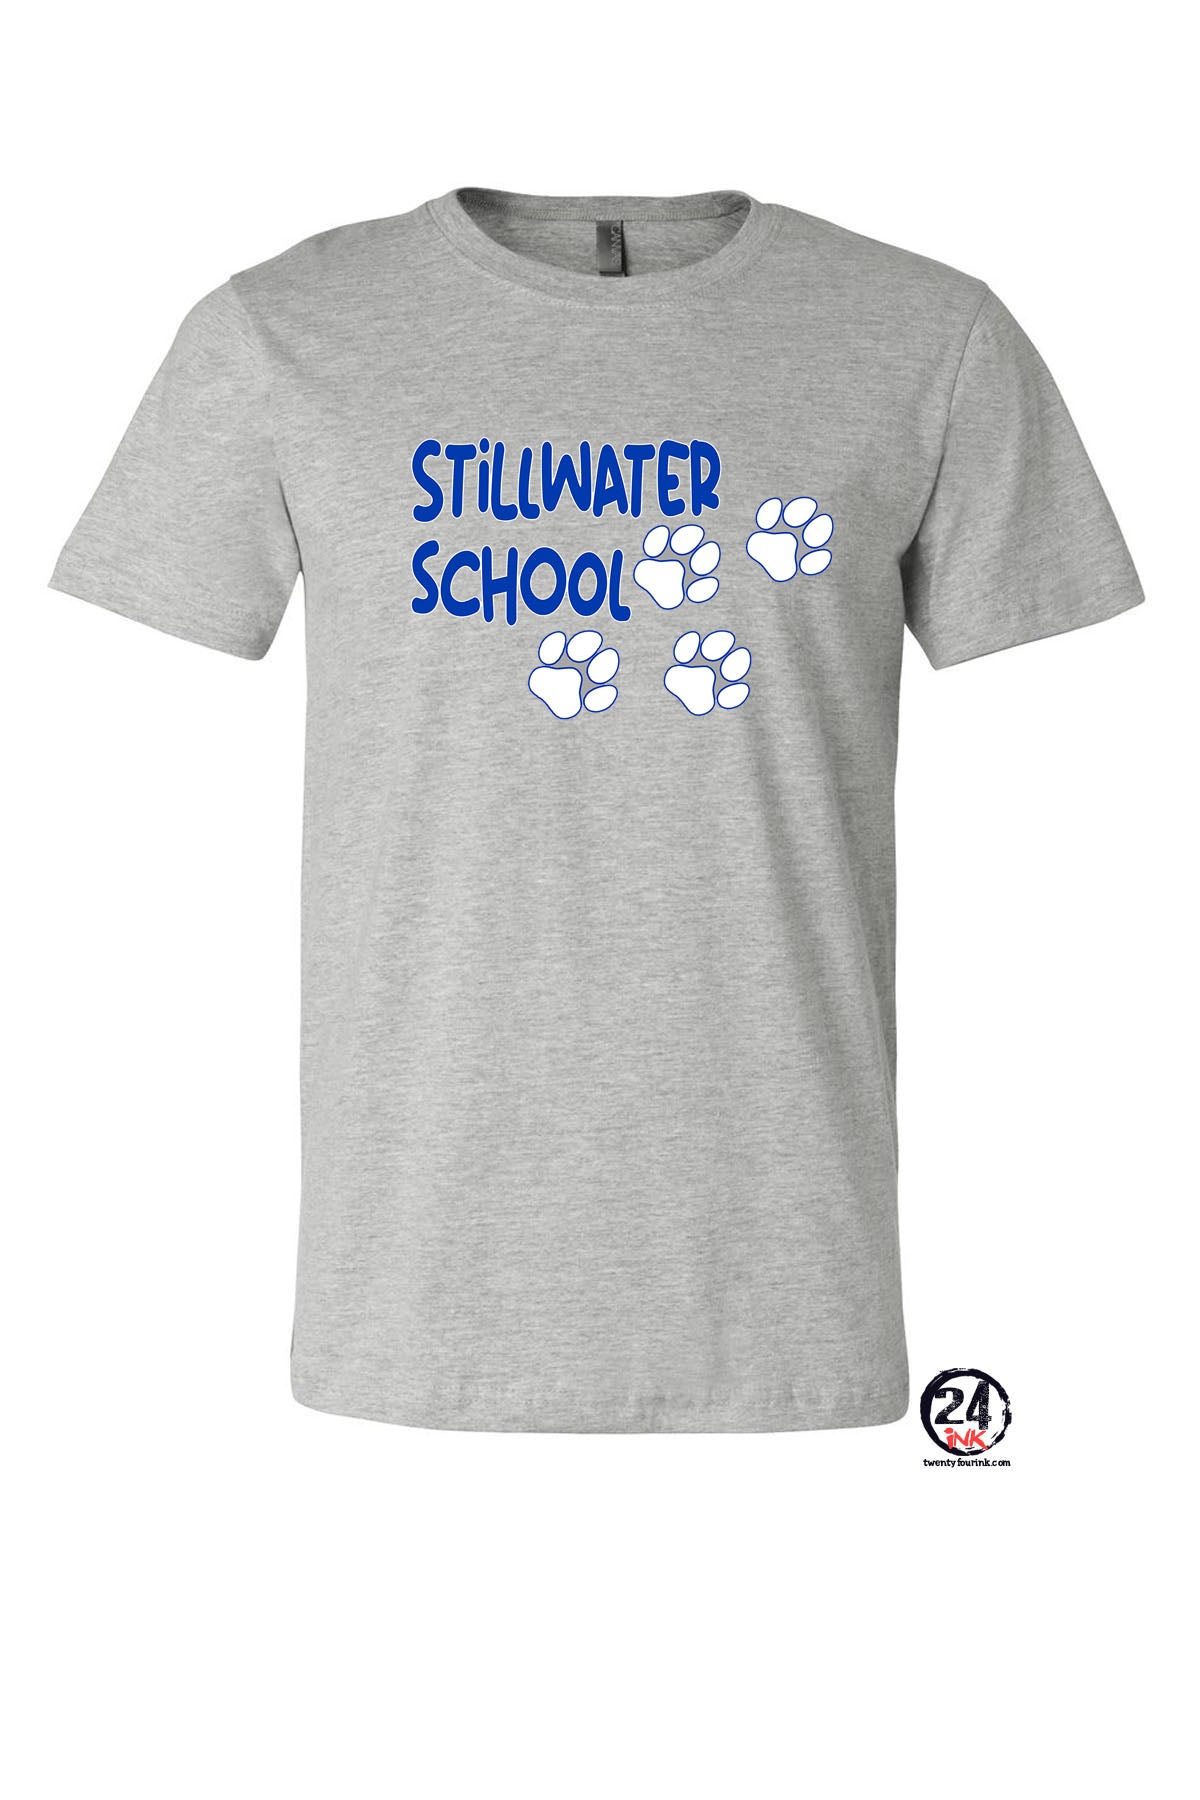 Stillwater design 4 T-Shirt